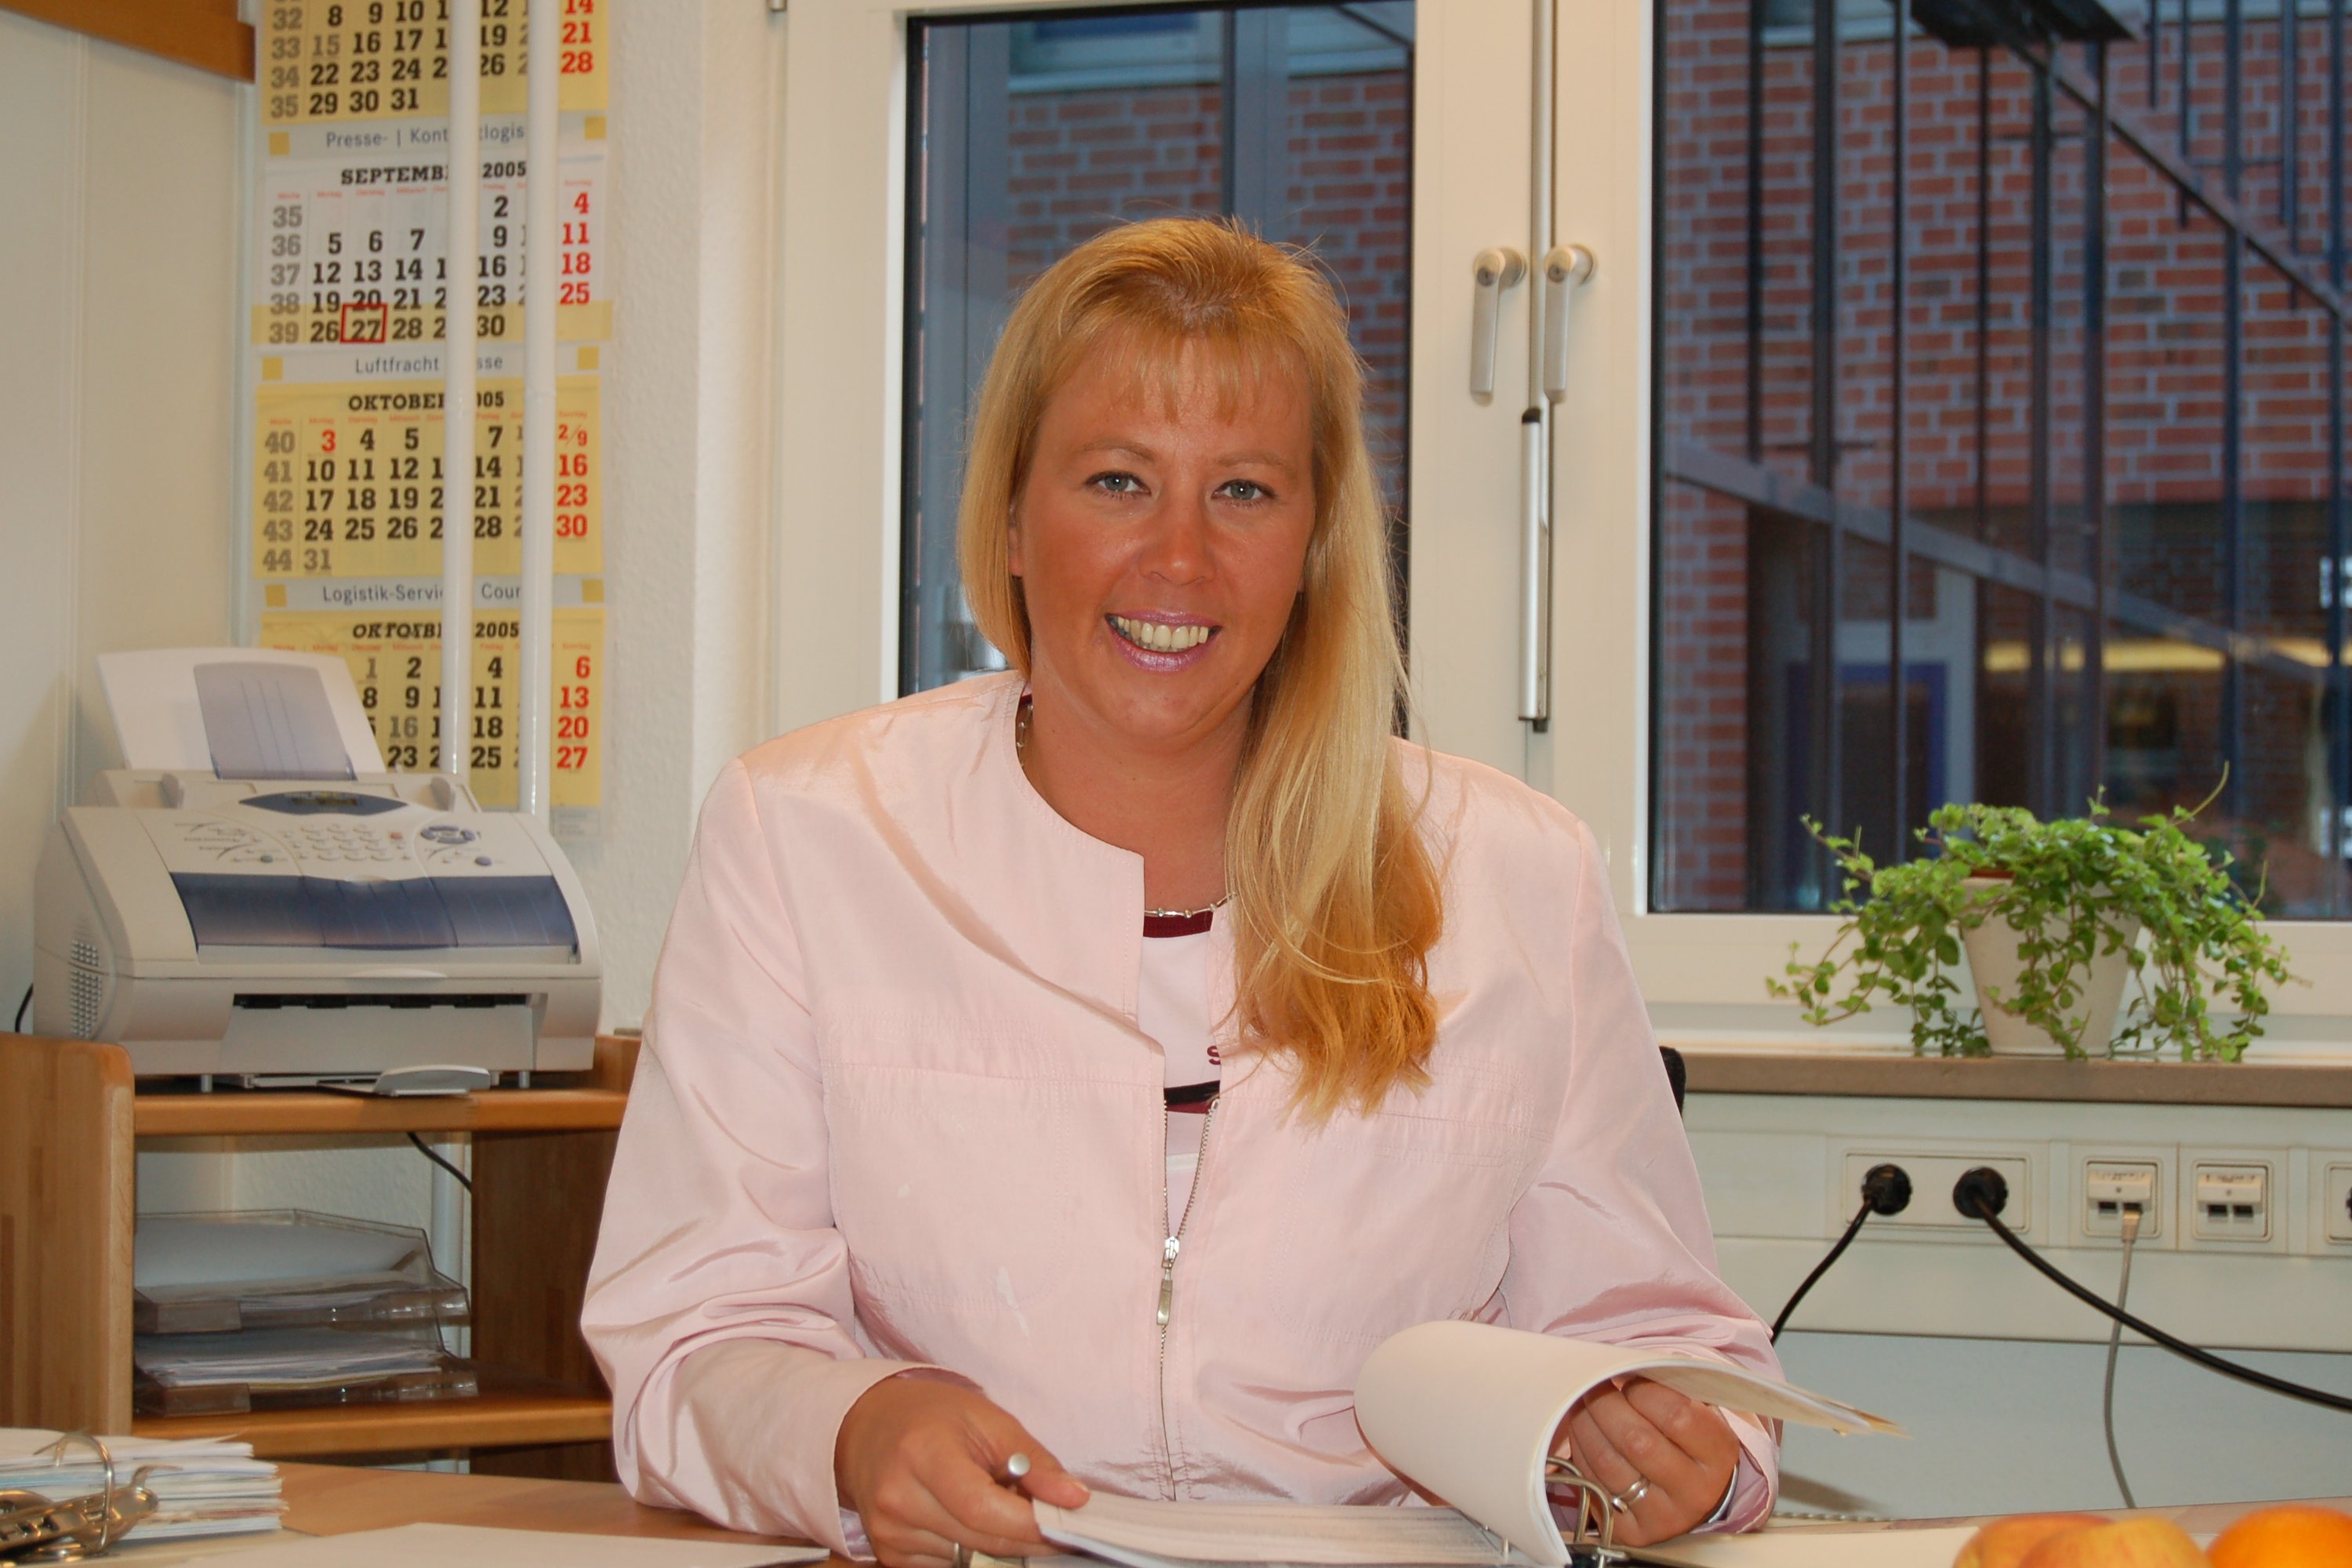 Buchhaltungsservice Silvia Muhtz - Buchhalterin in Lübeck